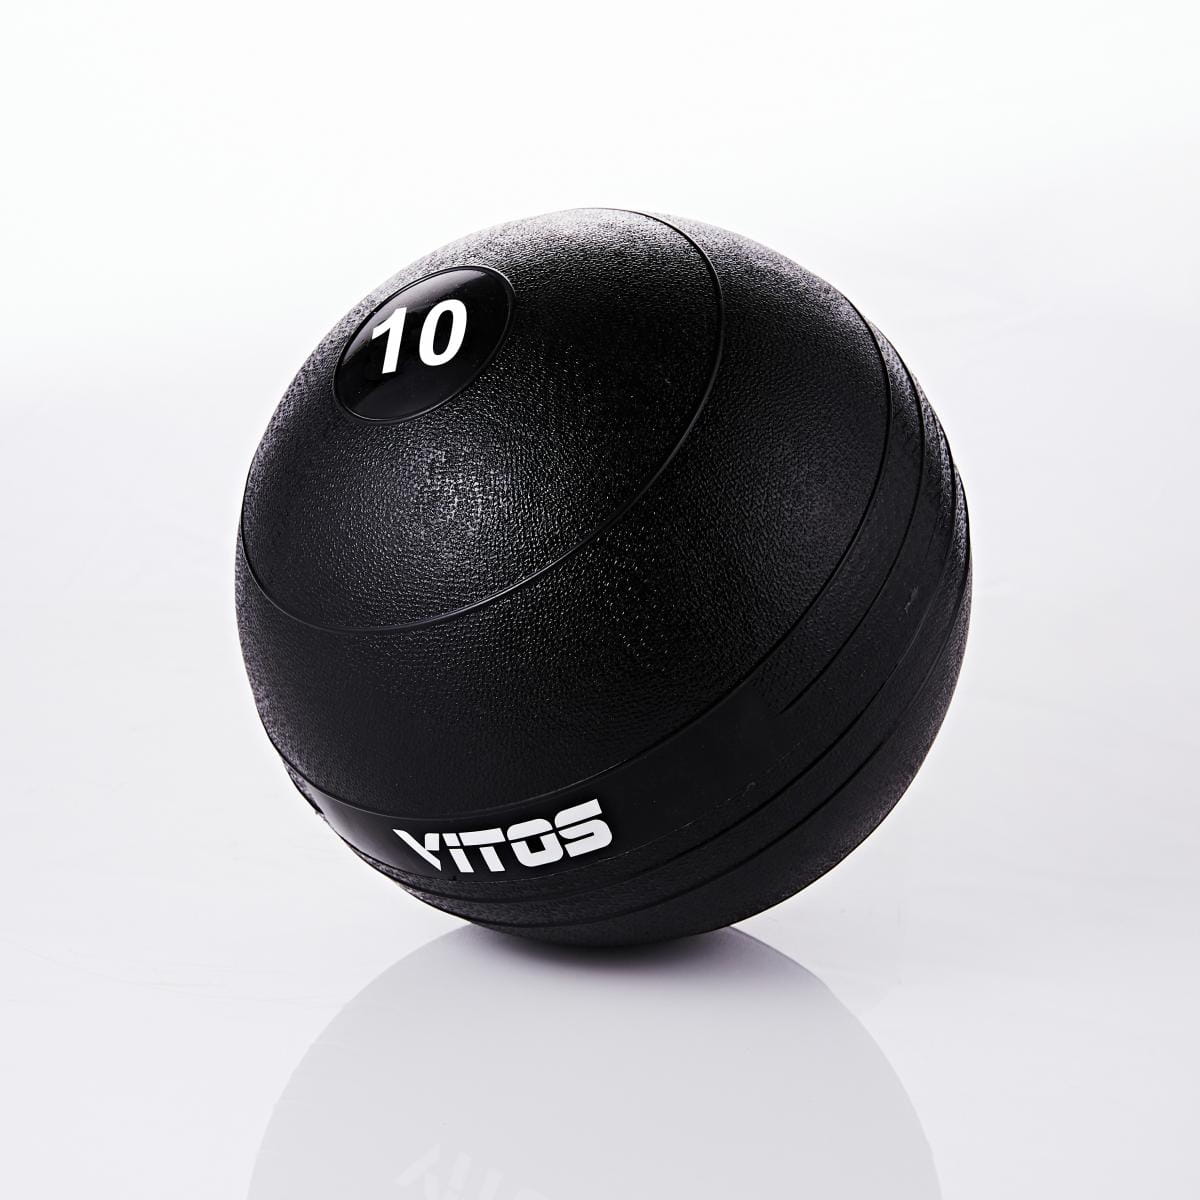 VITOS 重力球 10磅 0